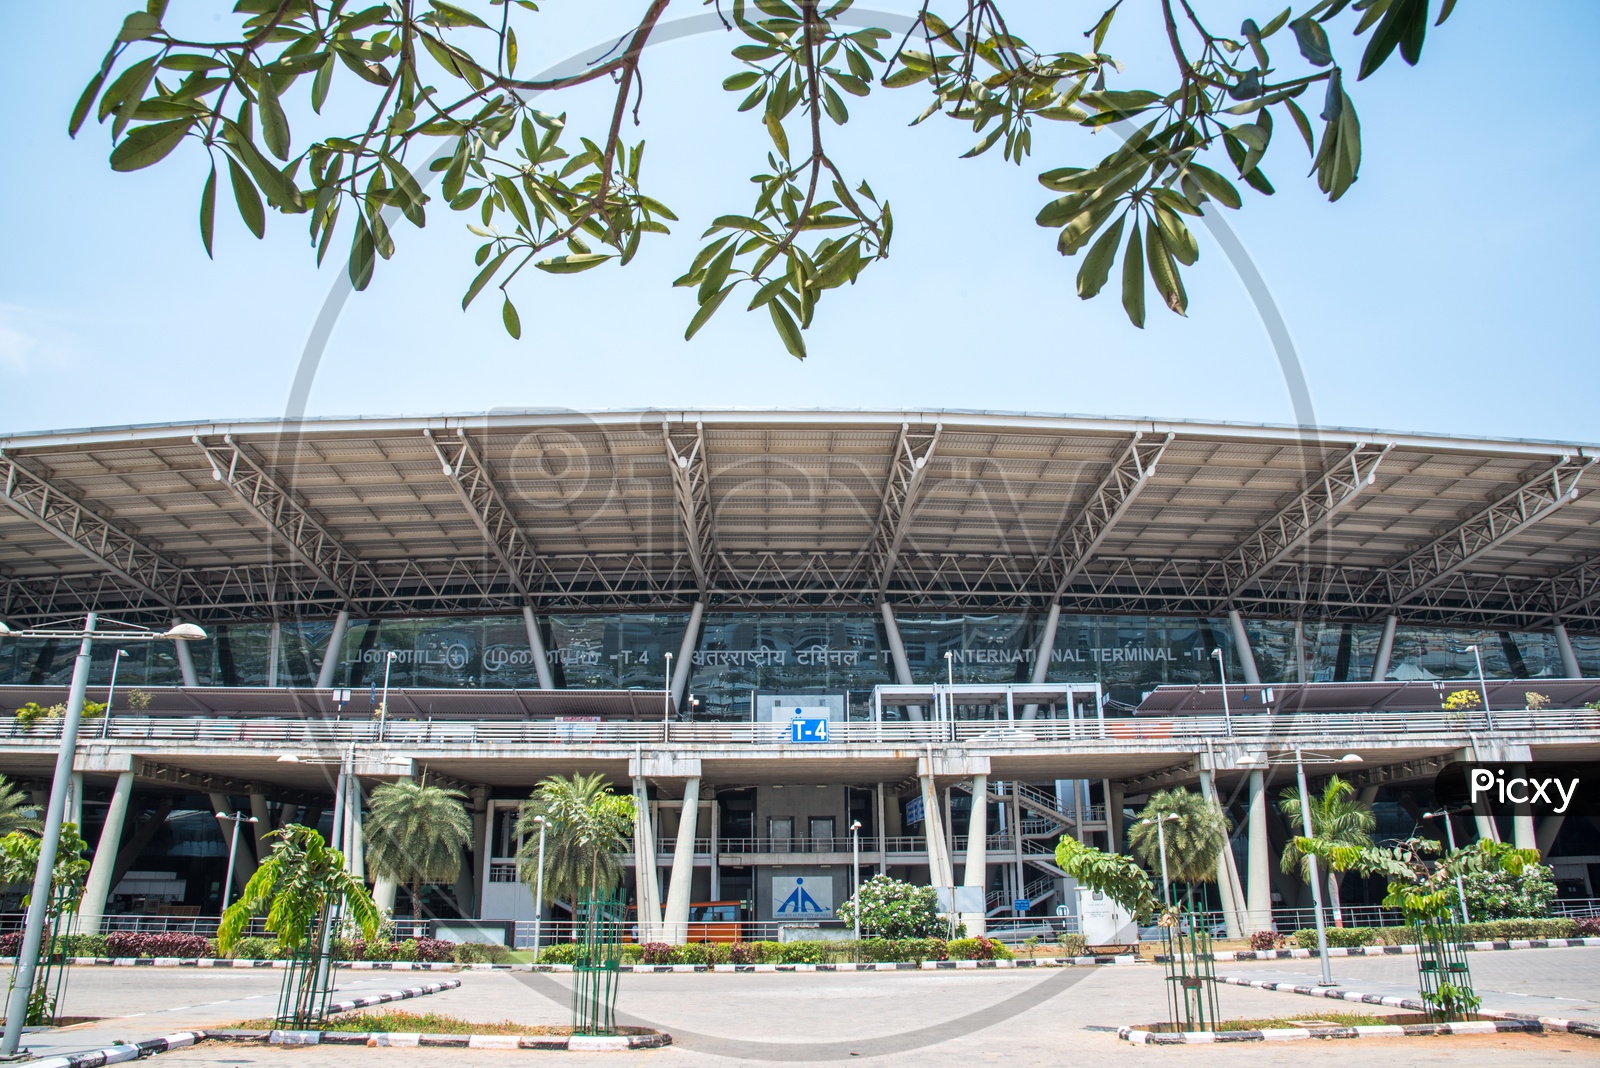 International terminal,Chennai Airport.